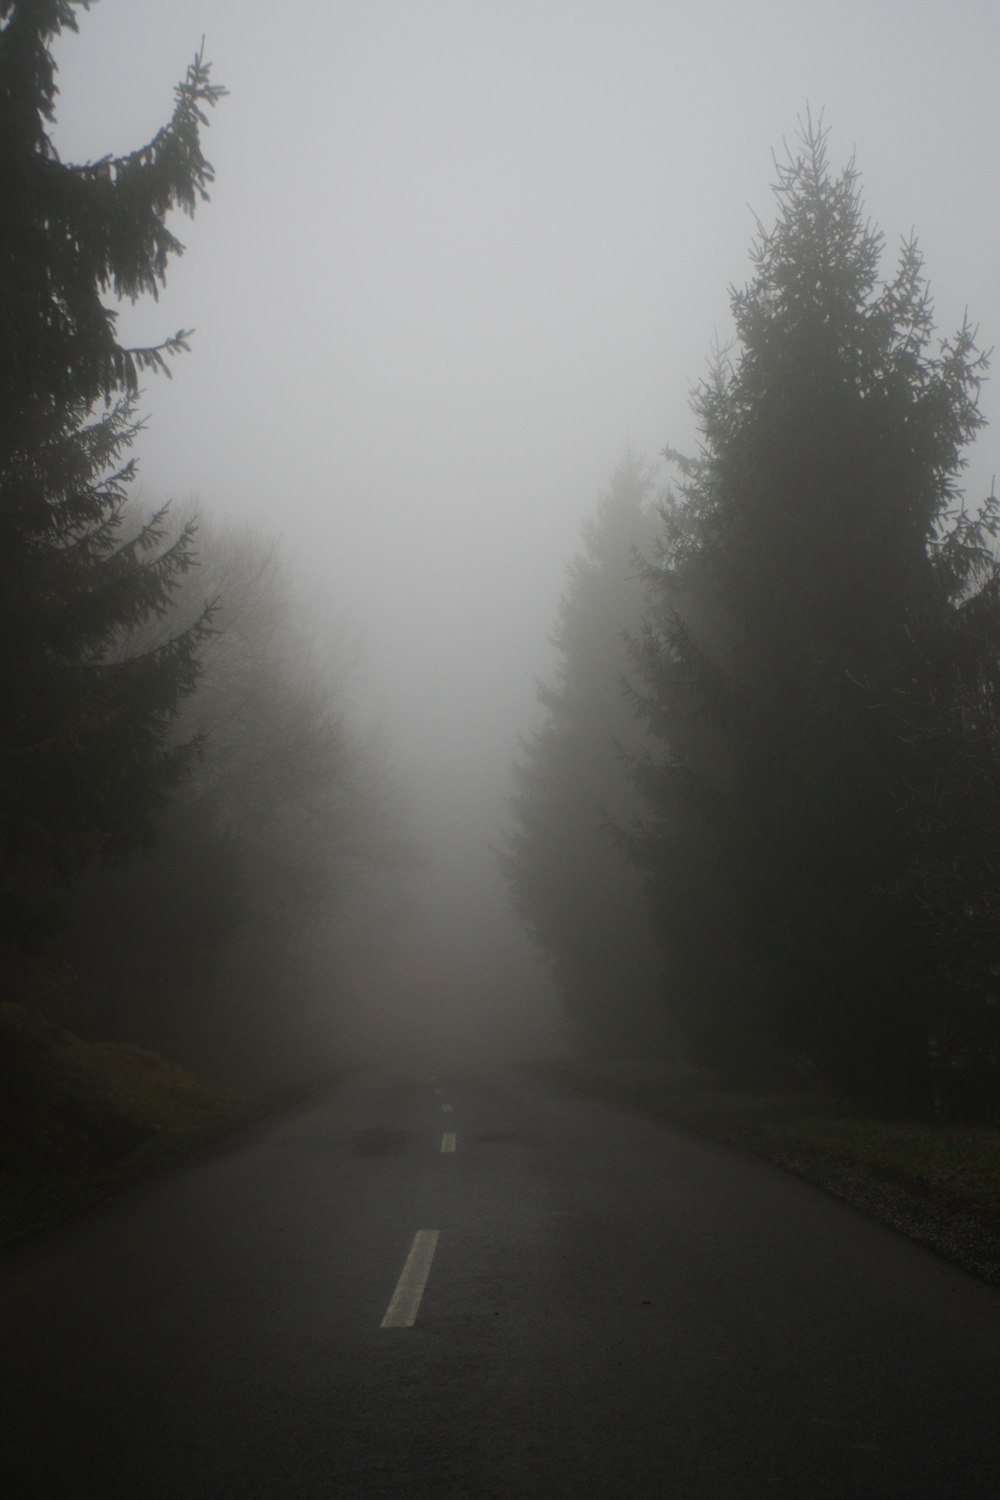 estrada de asfalto cinza entre árvores verdes durante o dia de neblina